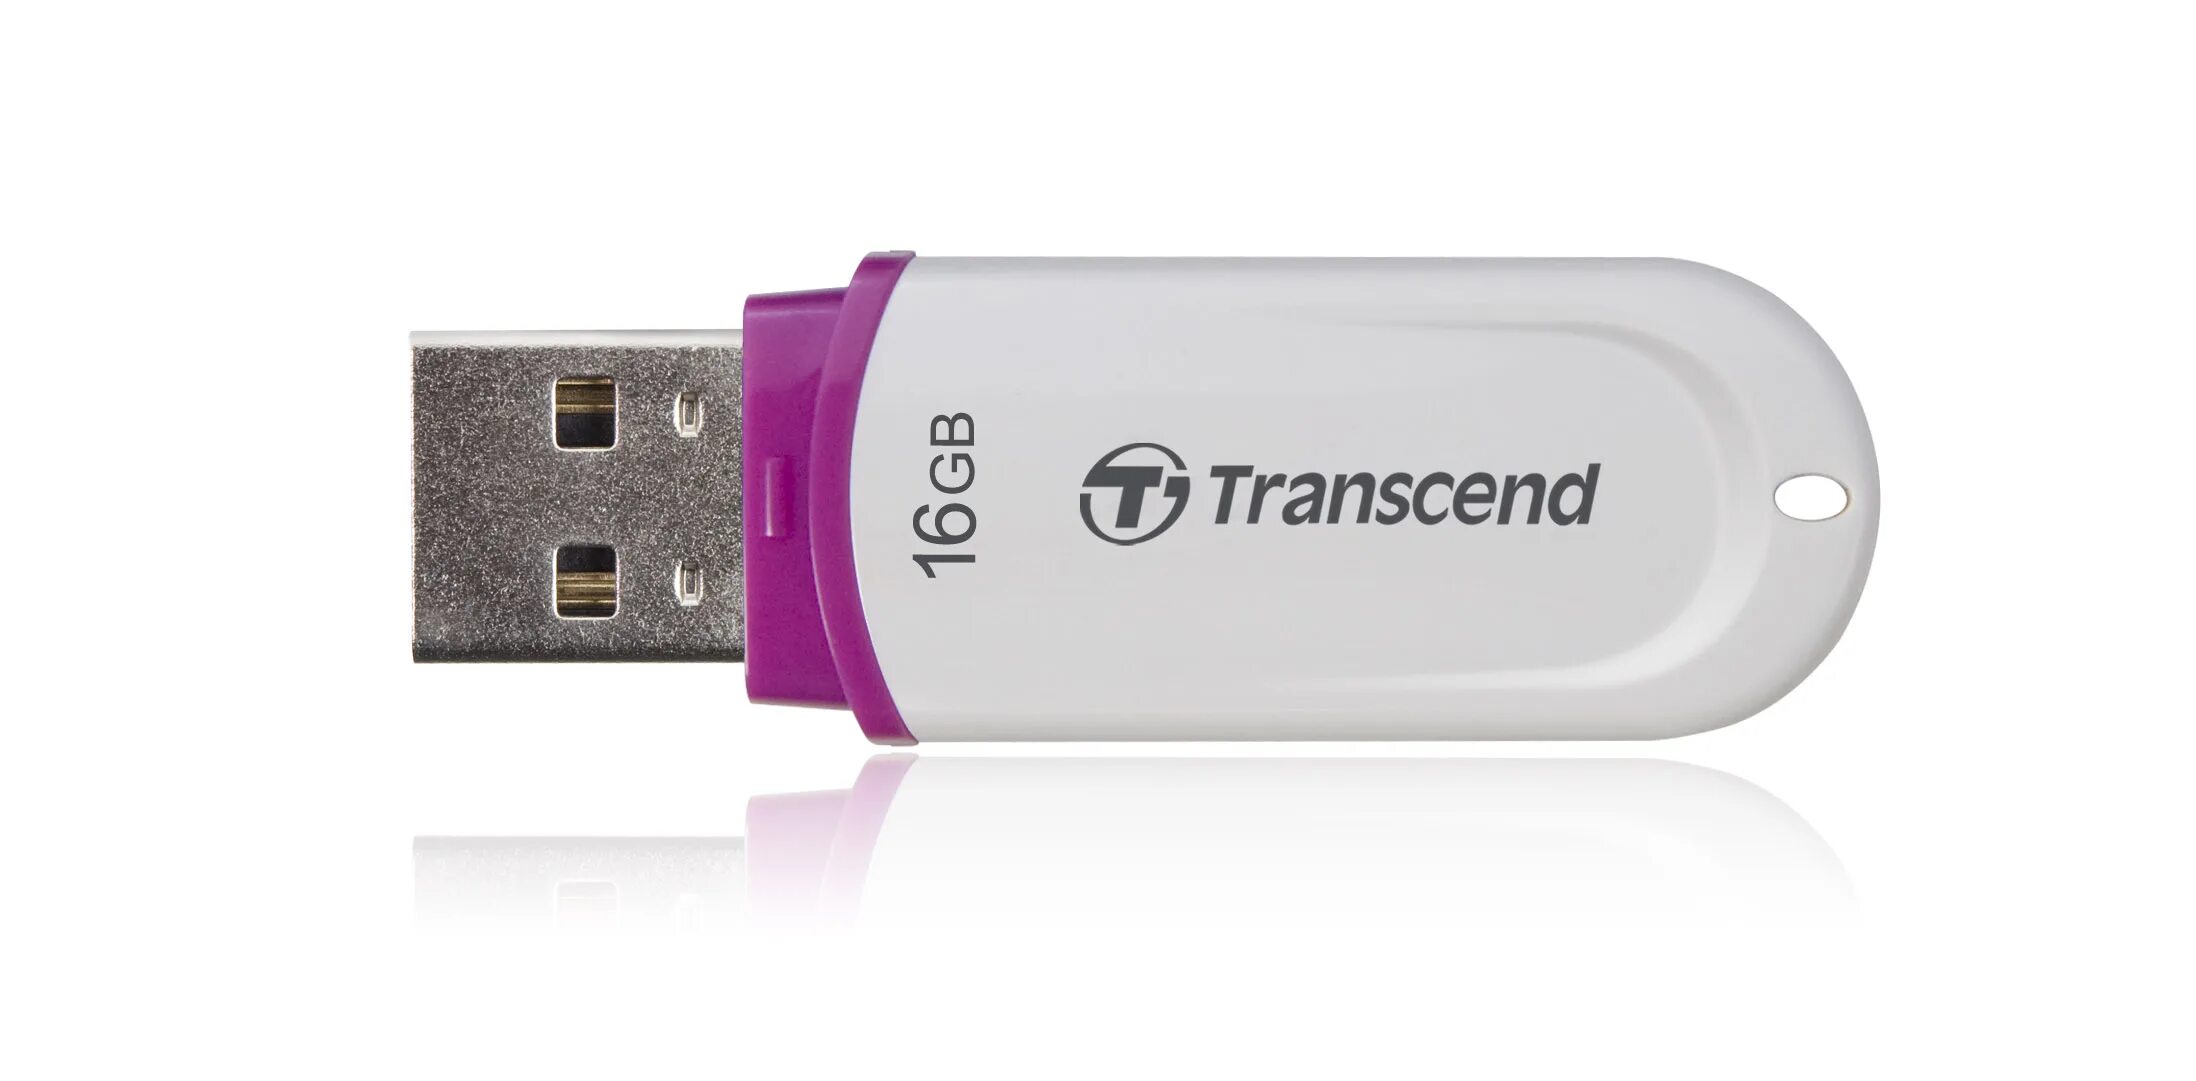 Восстановление флешки transcend. Флешка Transcend 8 GB. Transcend JETFLASH 330 8gb. USB Stick 16 GB Transcend. Transcend JETFLASH 16gb USB 2.0.